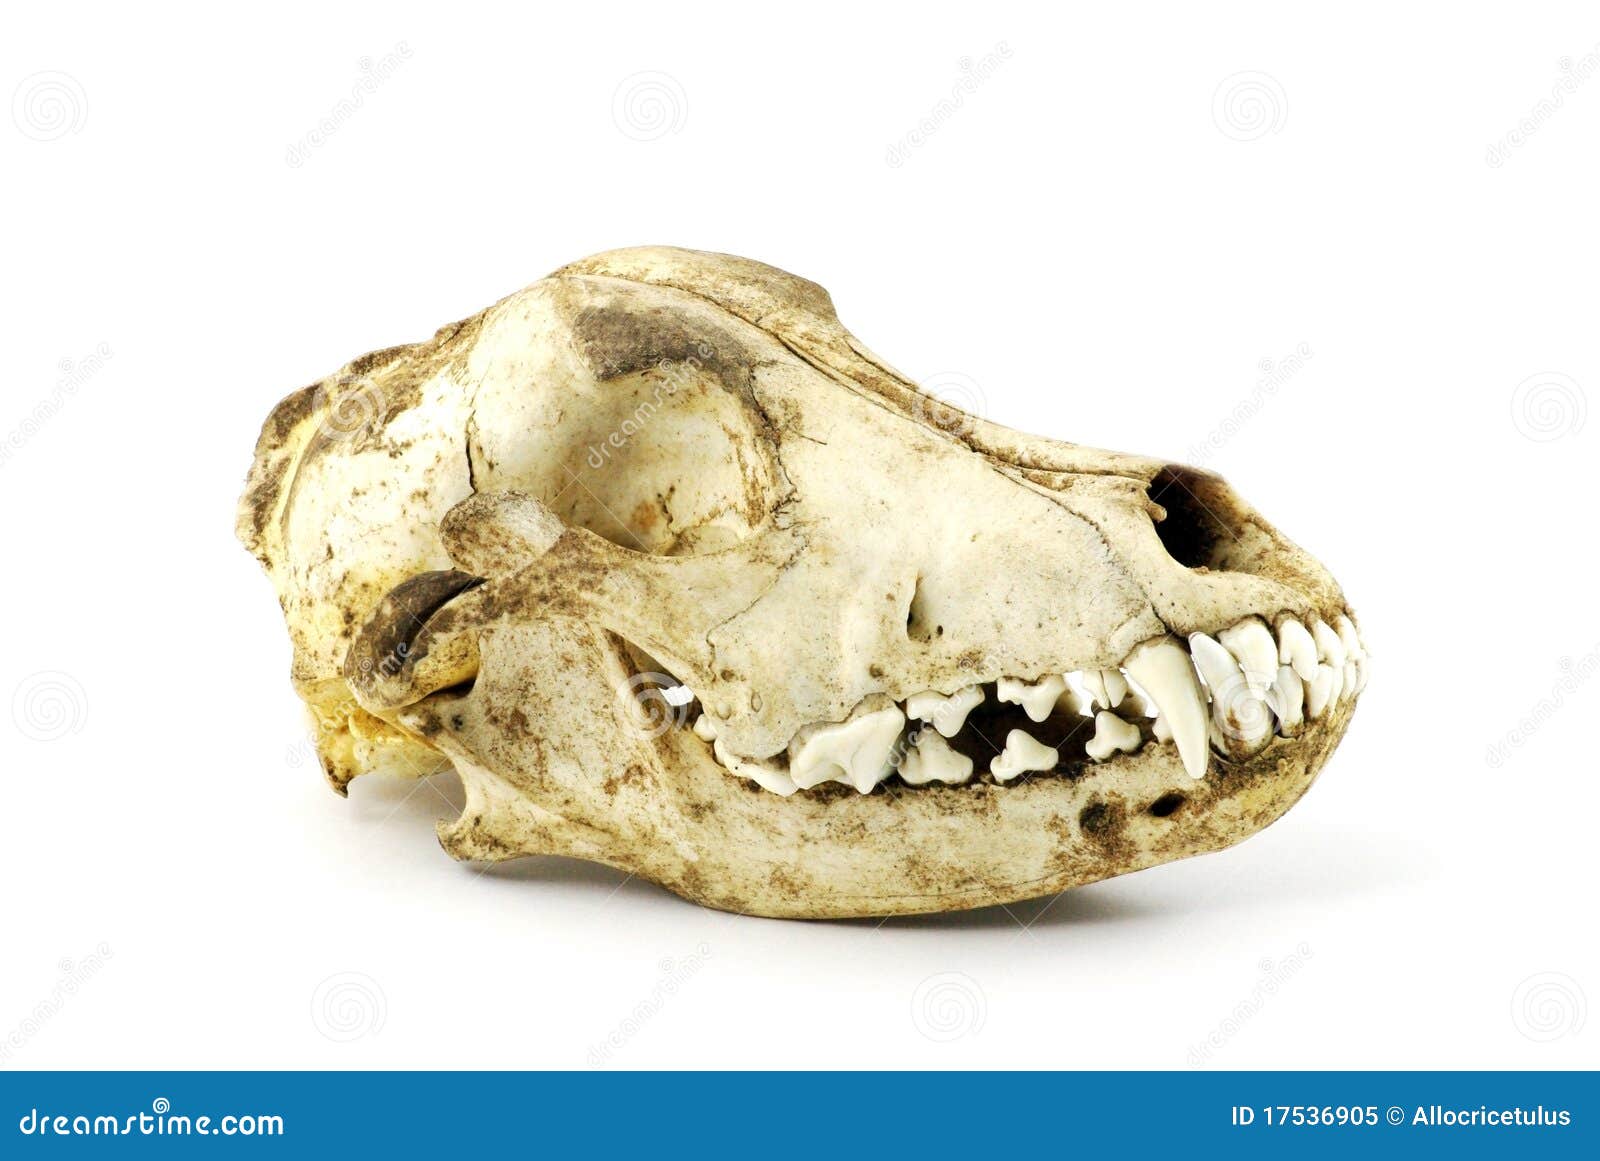 Dog Skull Royalty Free Stock Photo - Image: 17536905